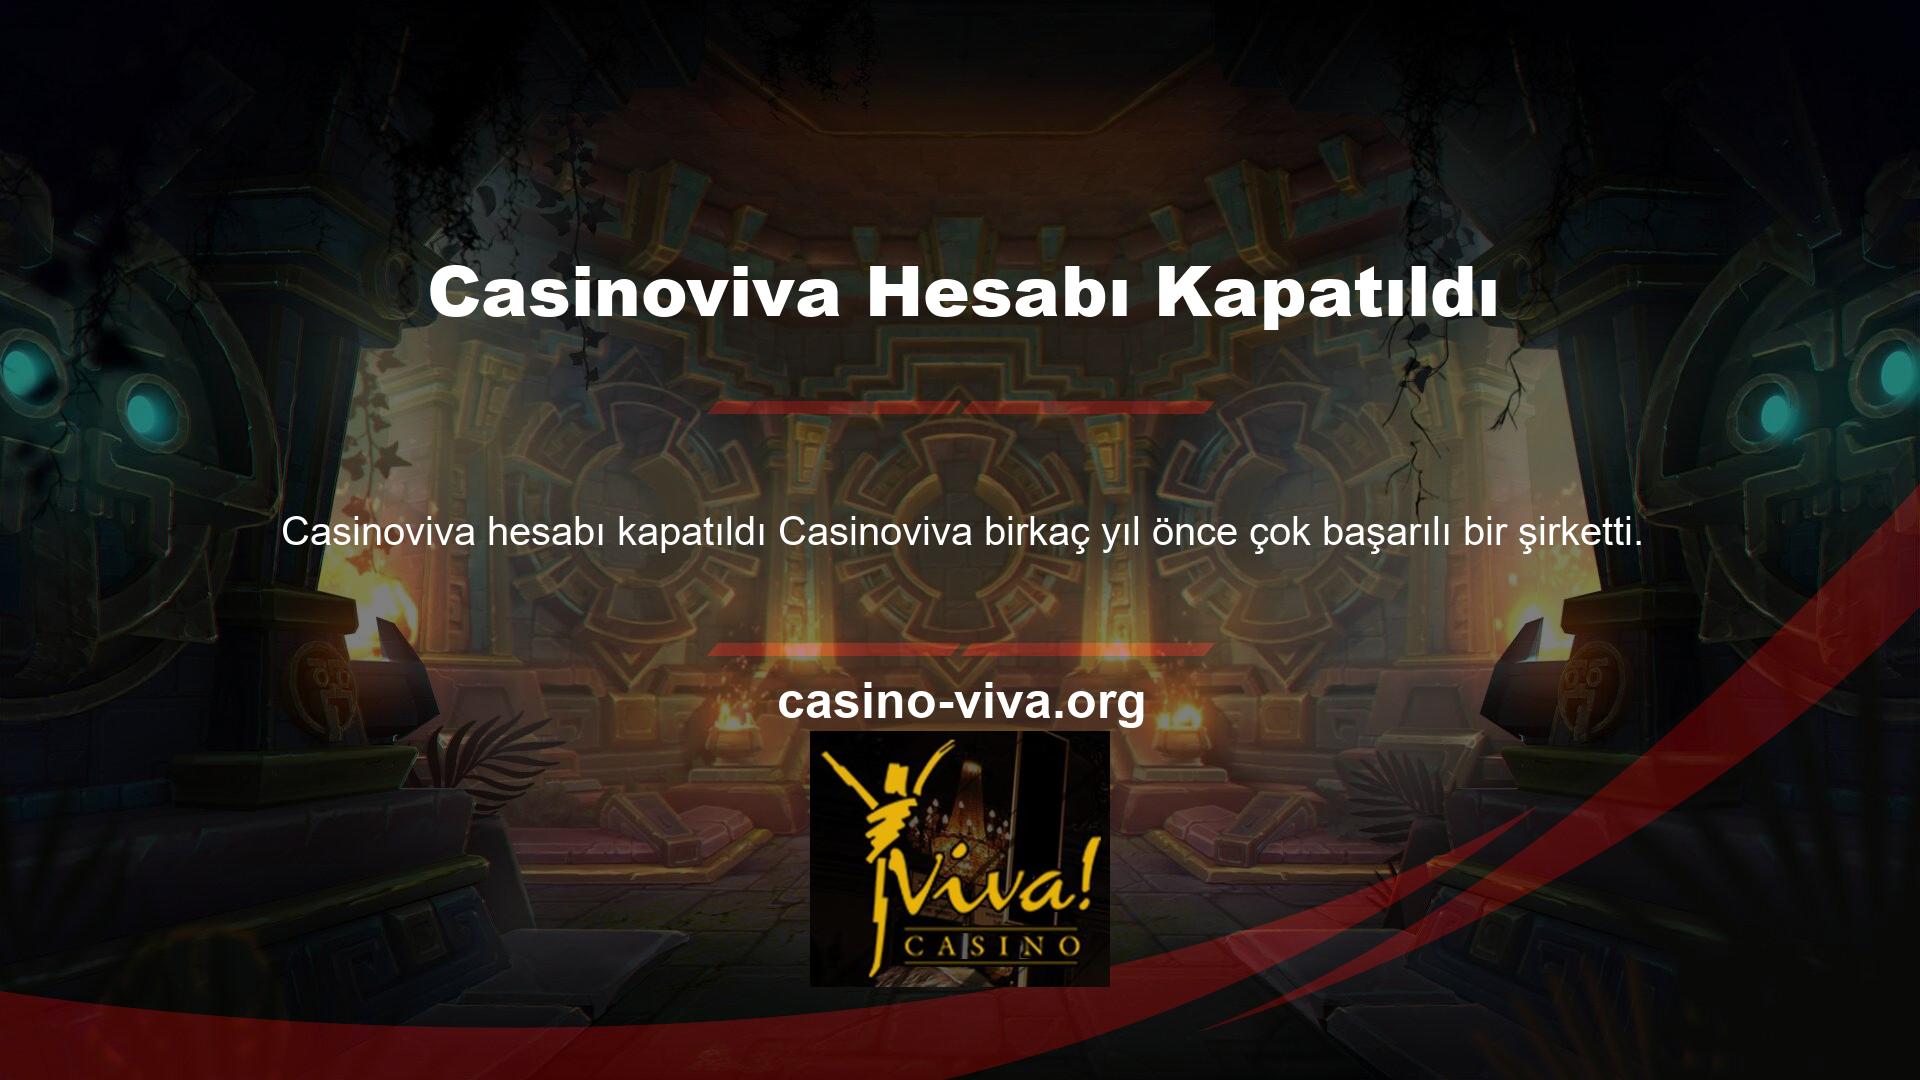 Bu site aktiftir ve casino hizmetleri sunmaktadır